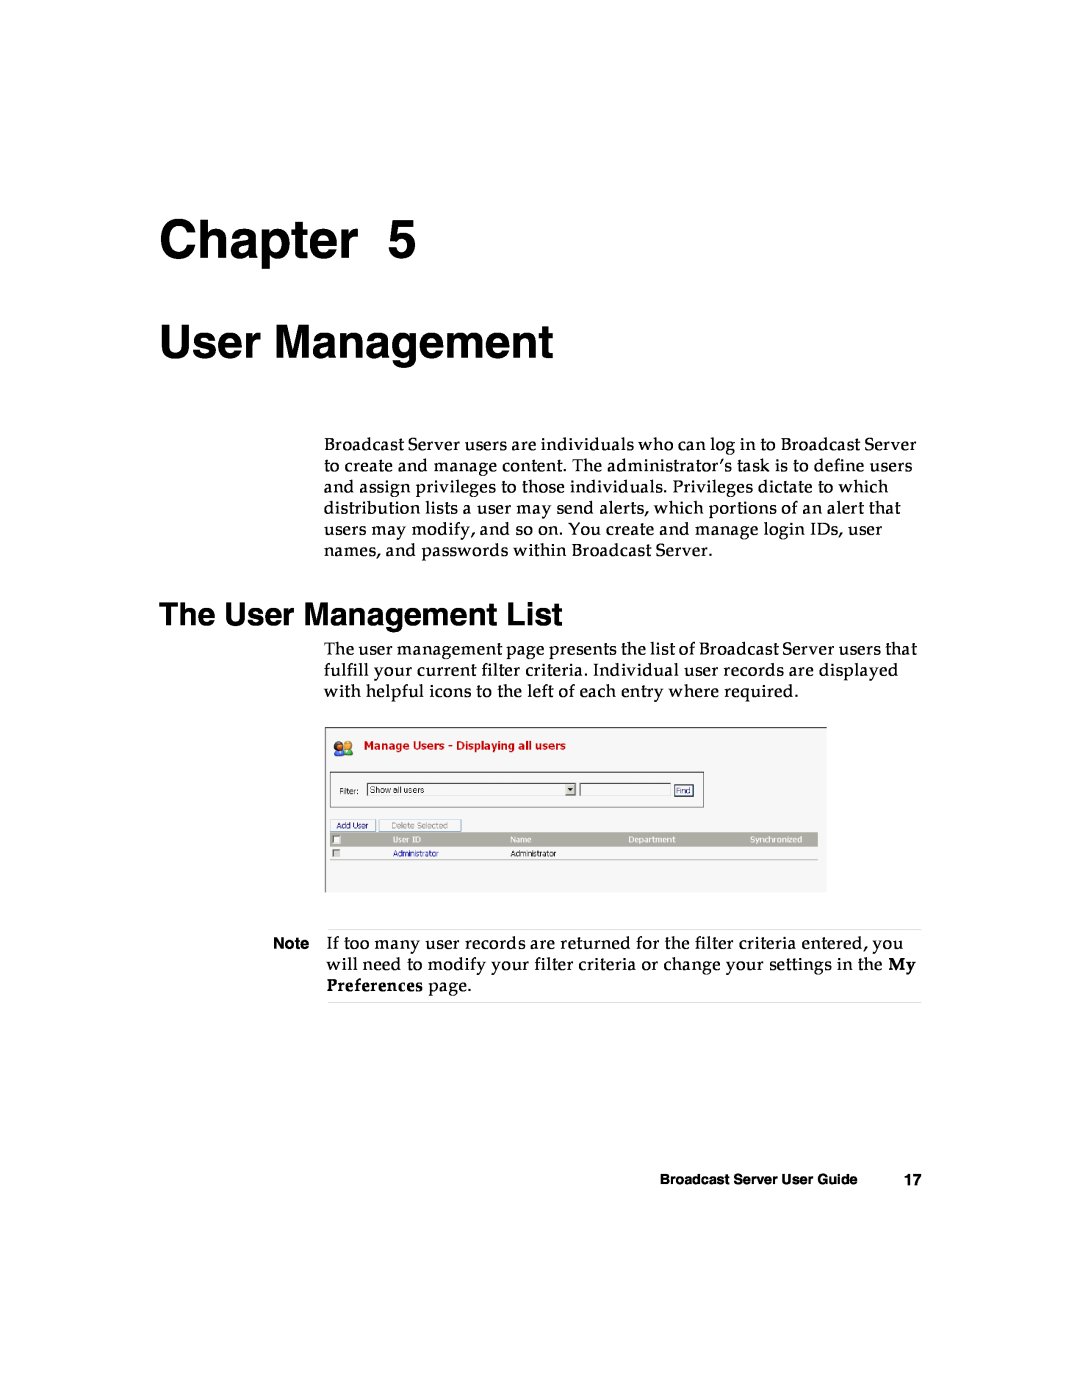 Nortel Networks Broadcast Server warranty The User Management List, Chapter 